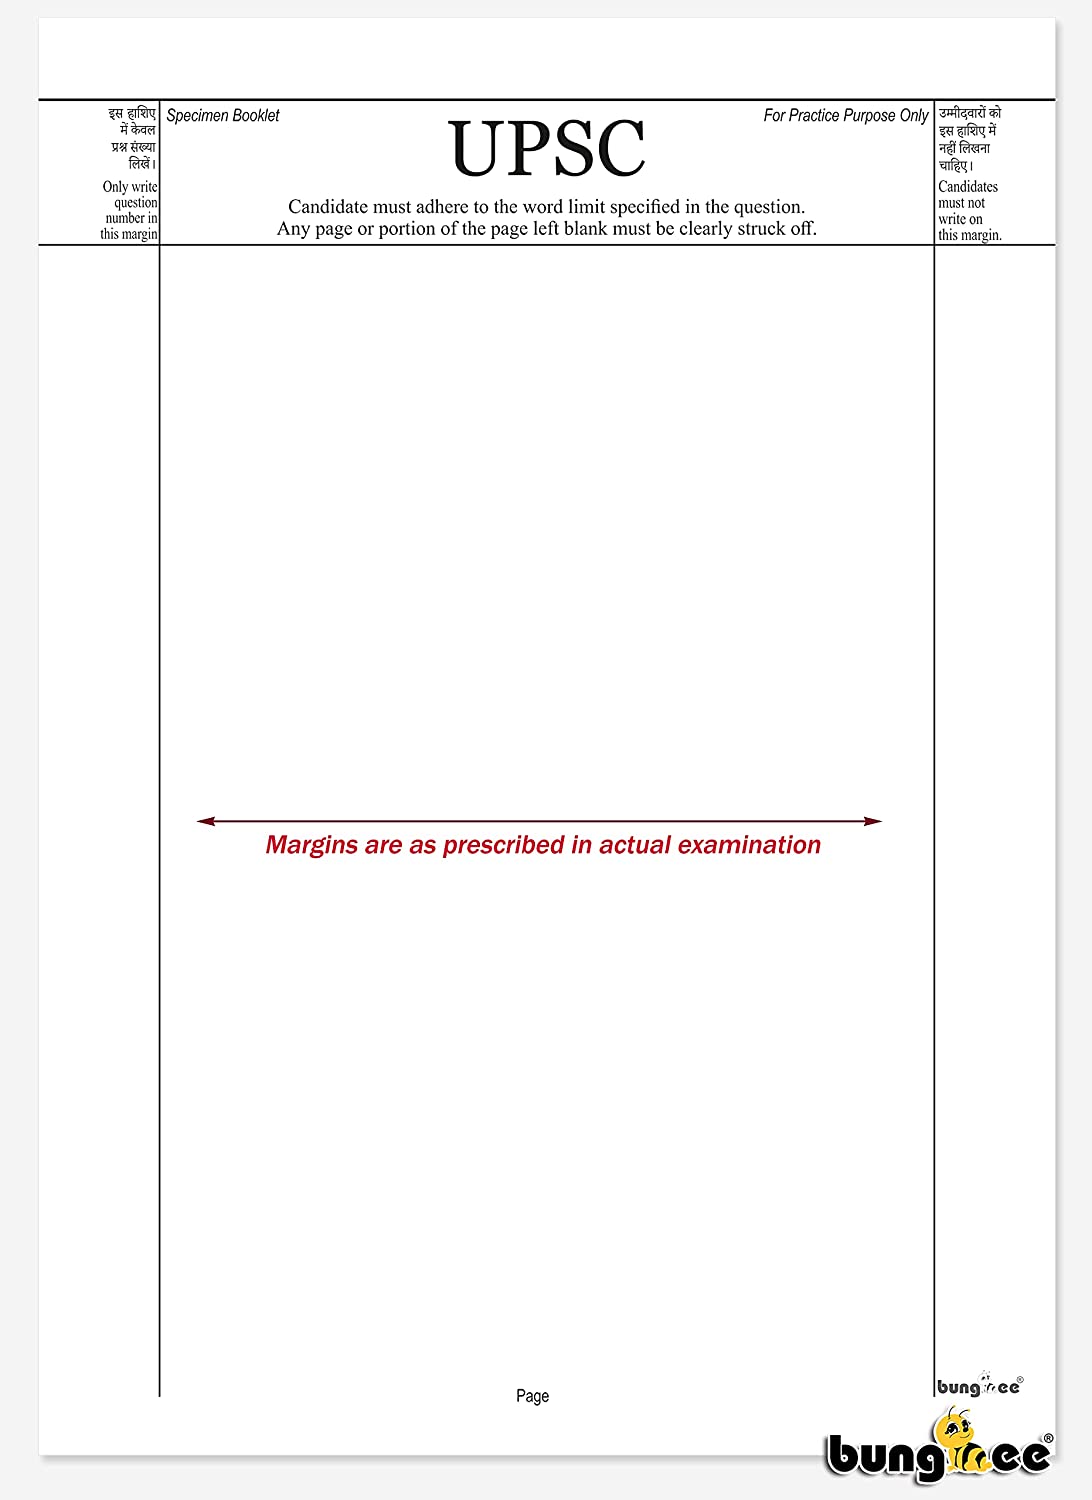 upsc assignment sheet